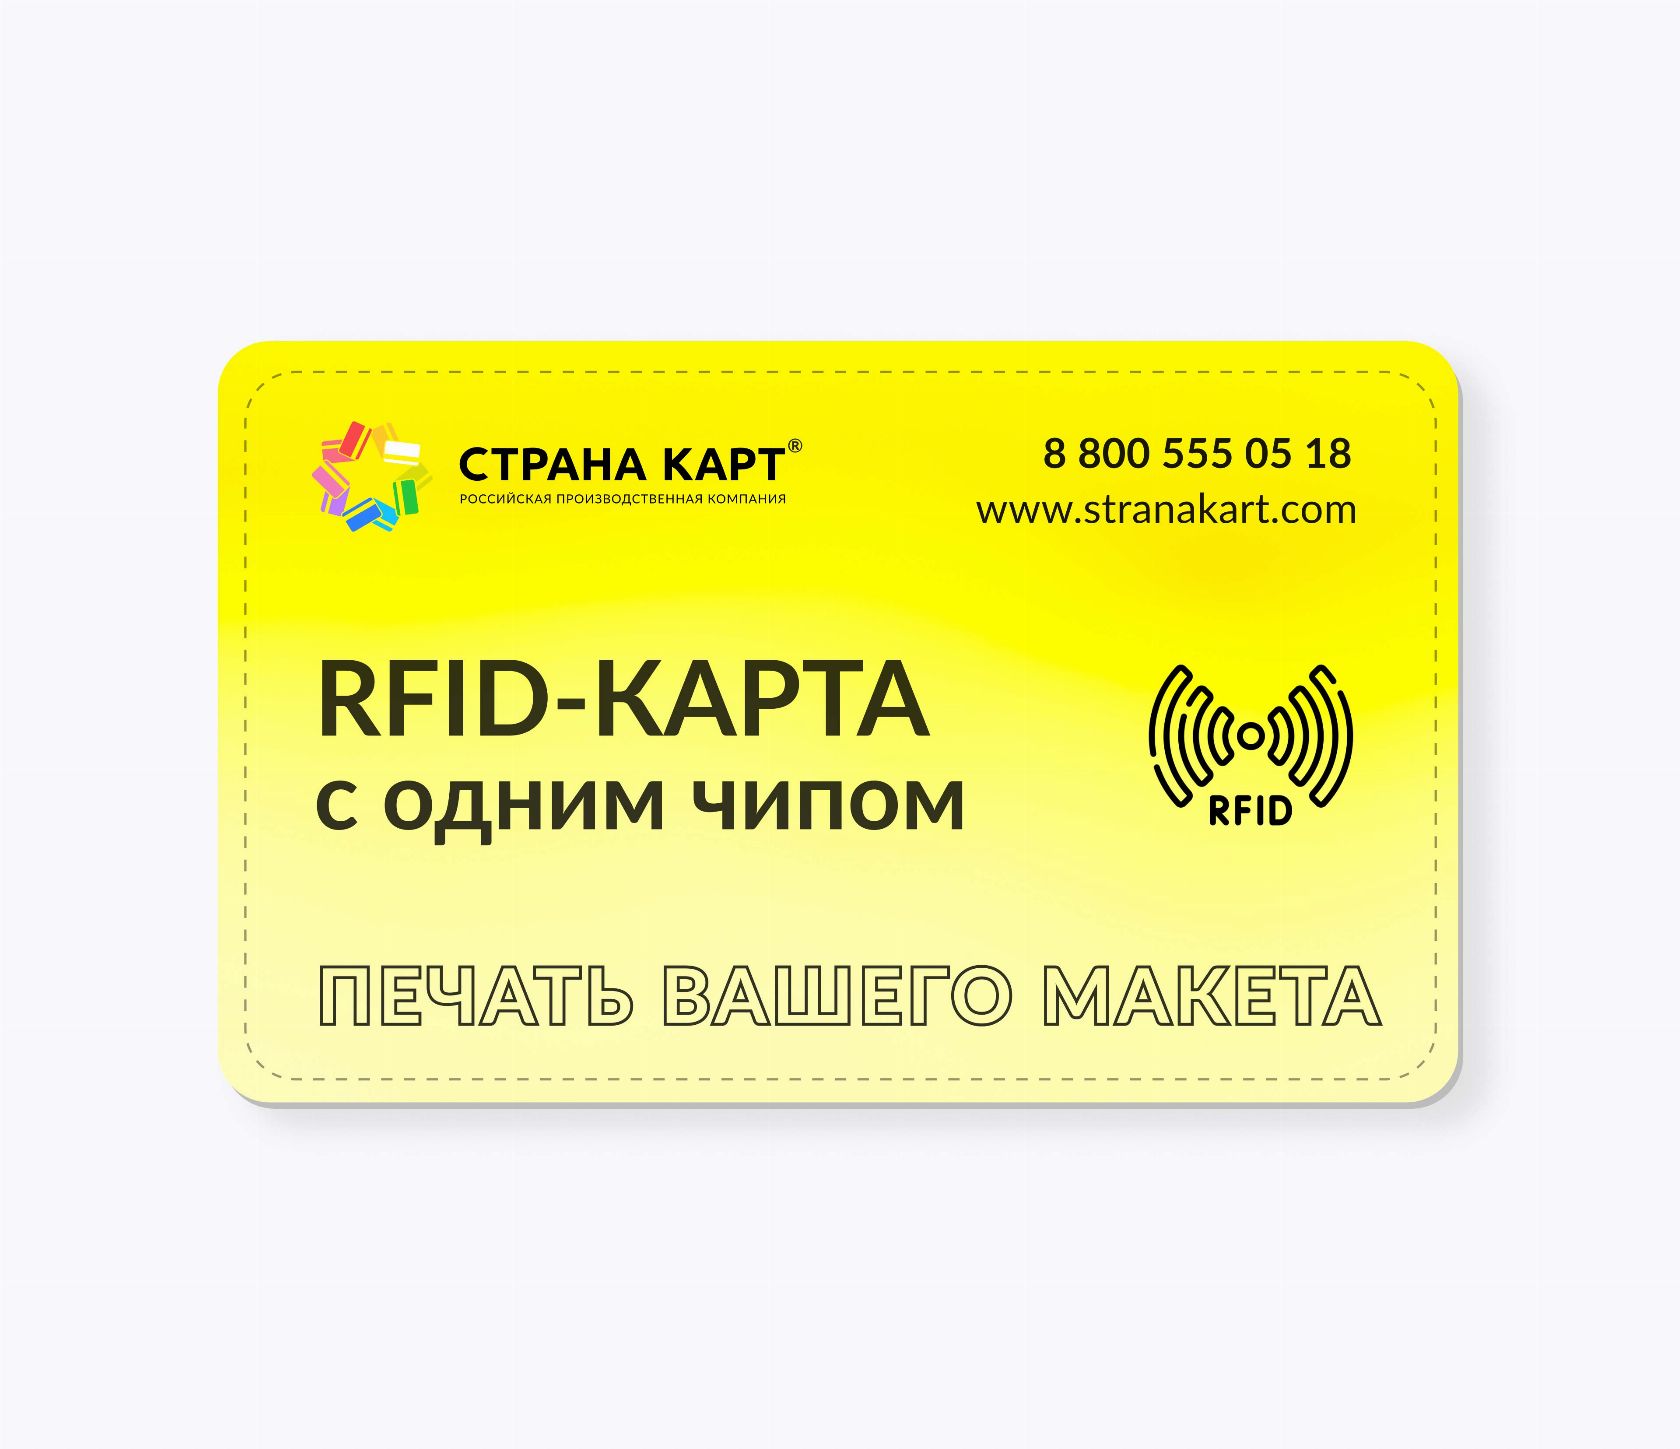 RFID-карты с чипом NXP NTAG 216 NFC печать вашего макета RFID-карты с чипом NXP NTAG 216 NFC